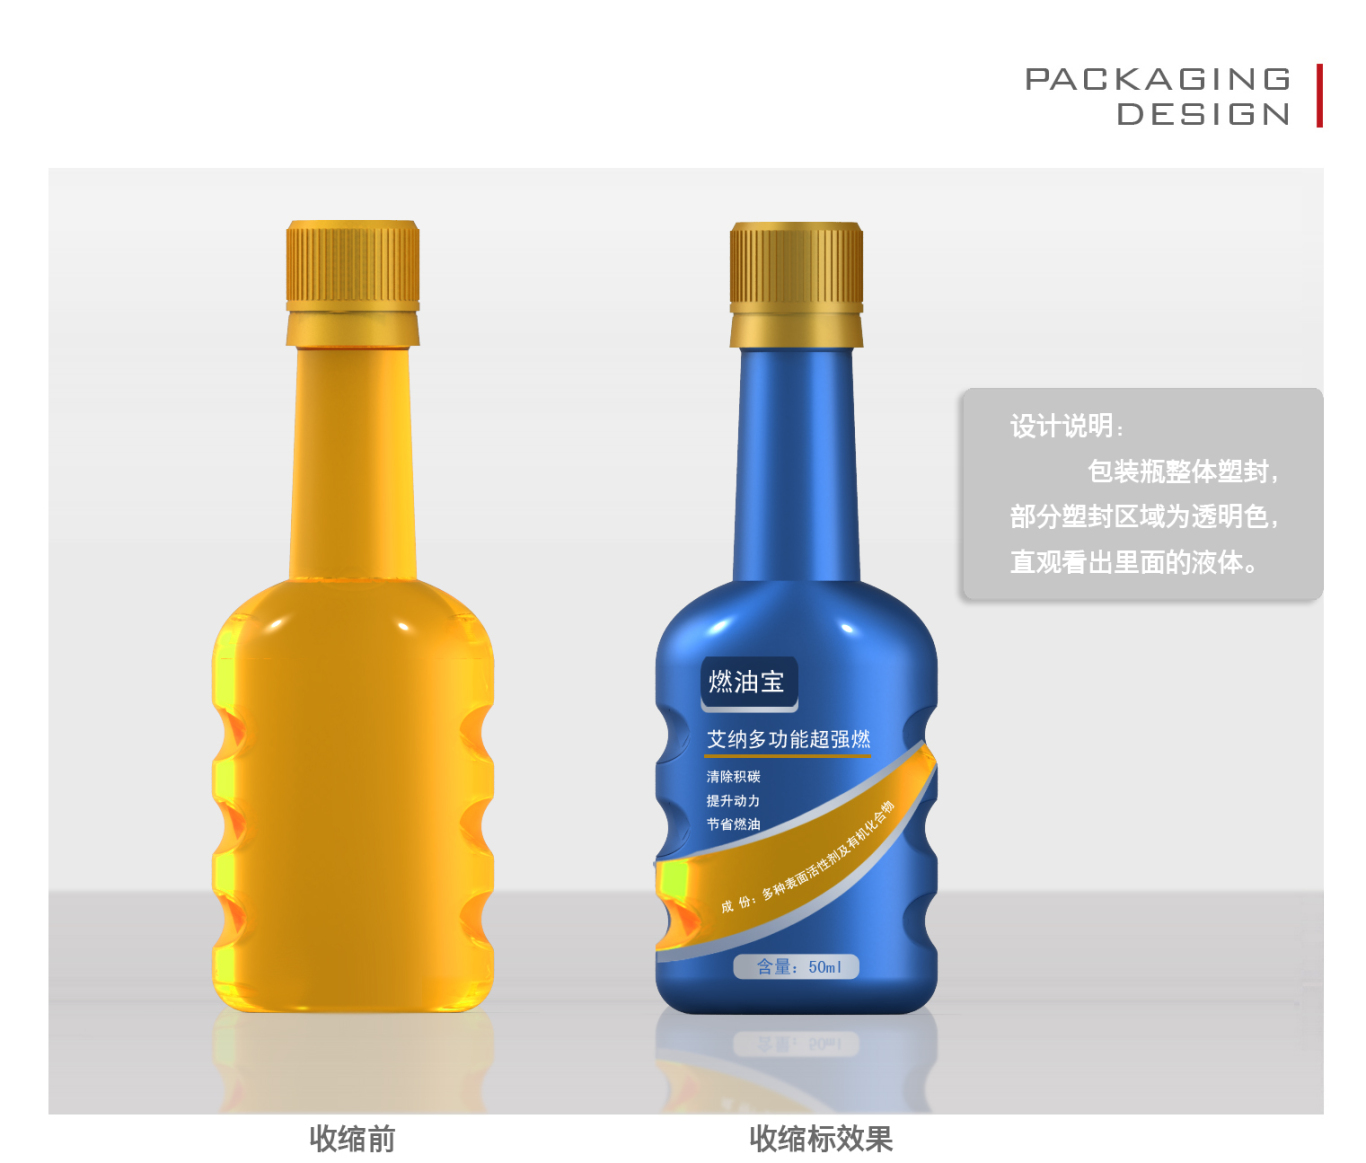 瓶型包装设计图2